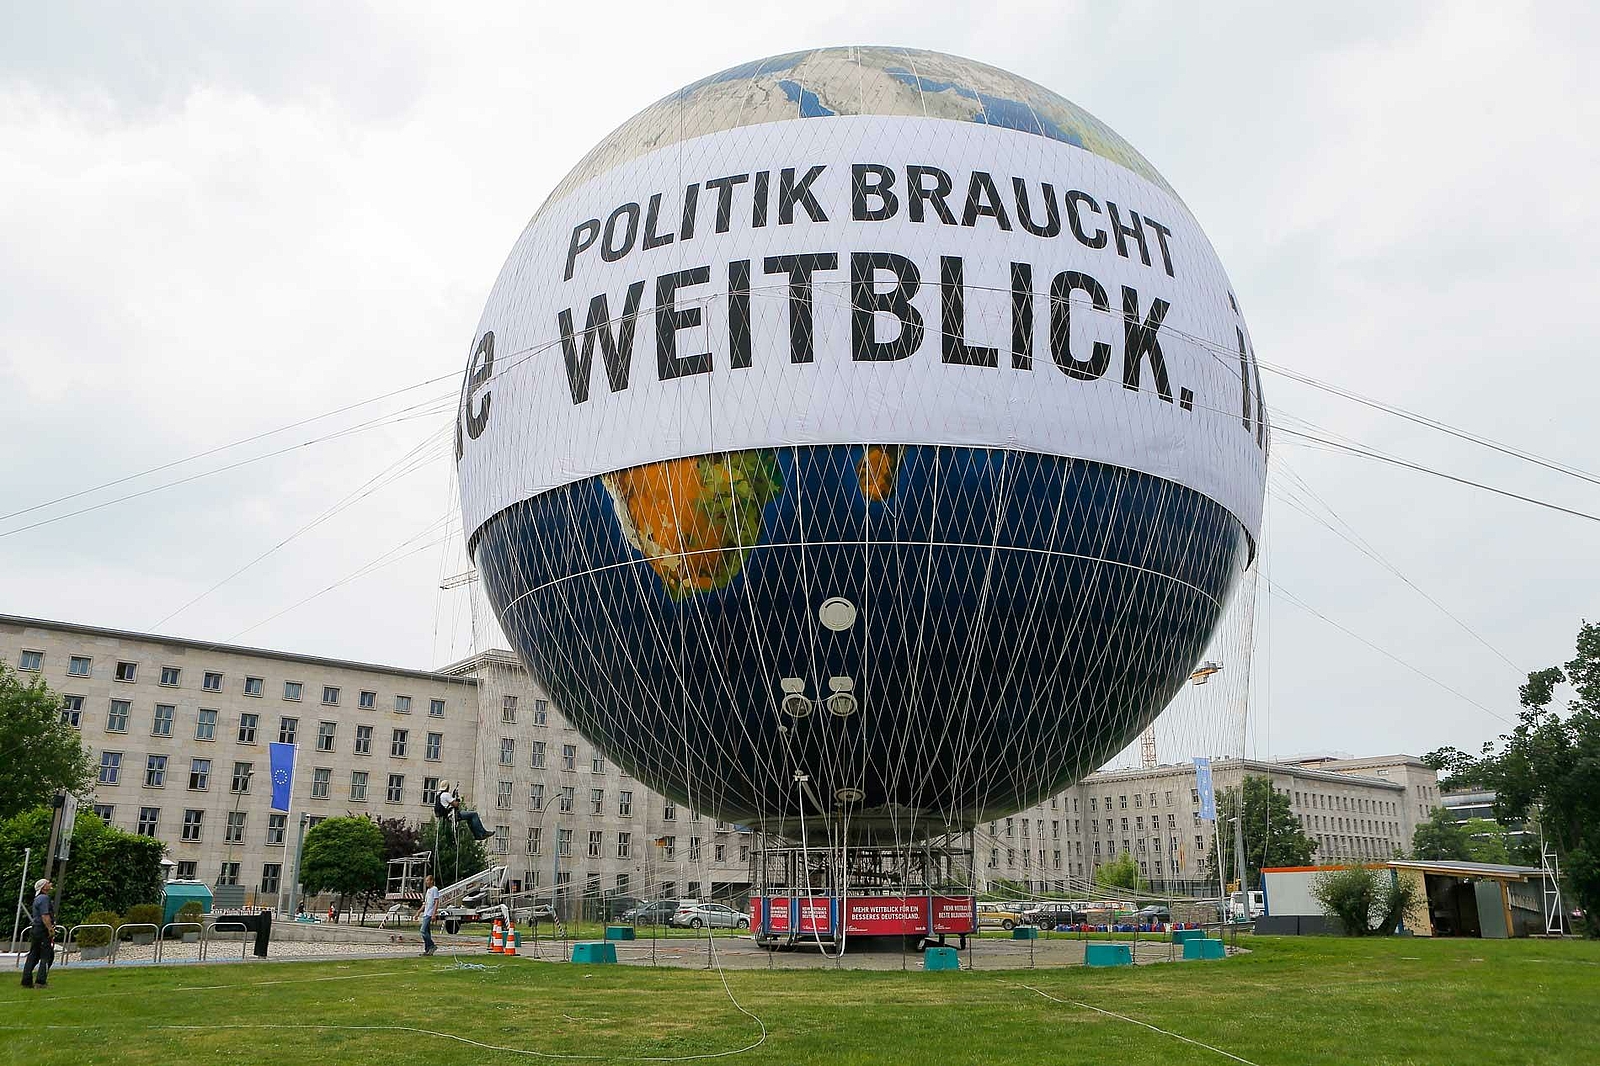 INSM-Weltballon: Politik braucht Weitblick